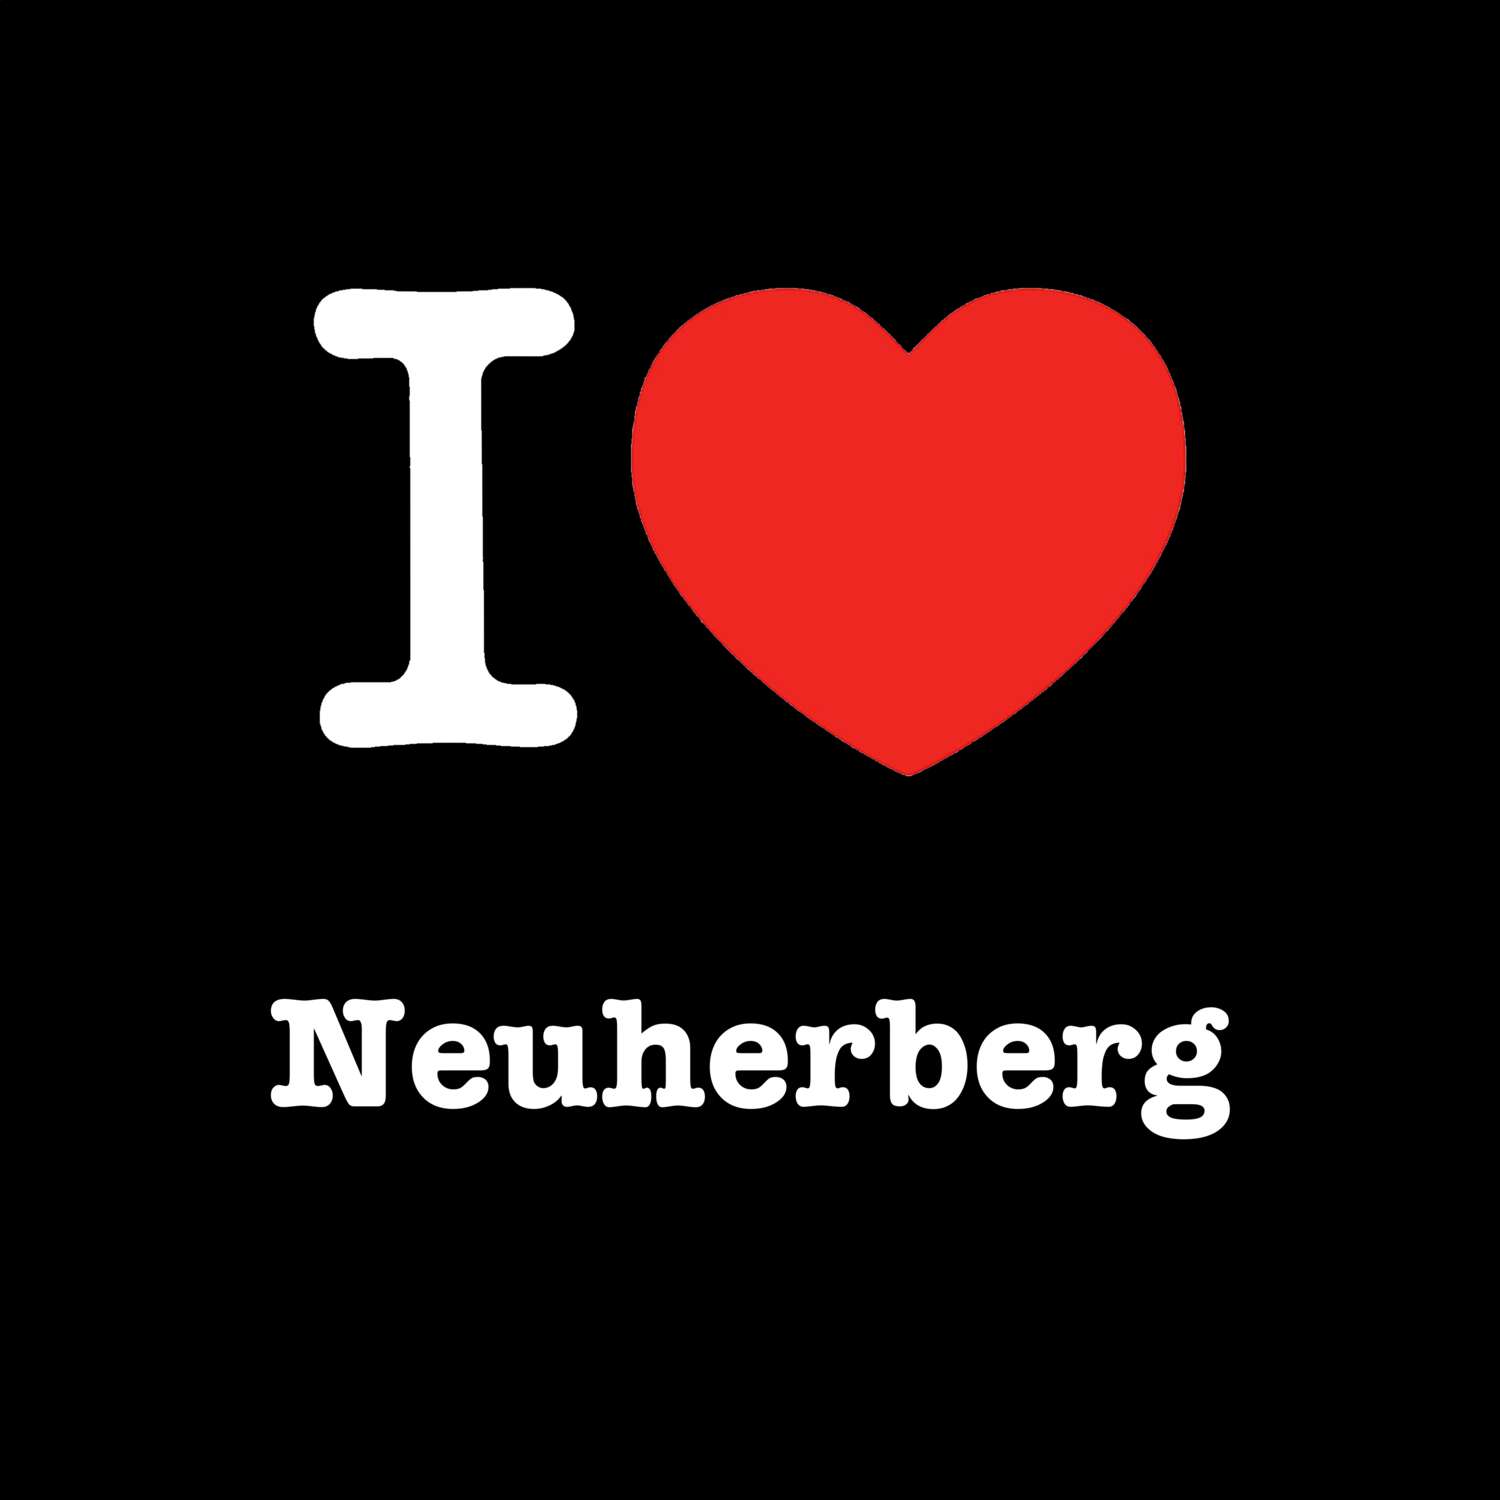 Neuherberg T-Shirt »I love«